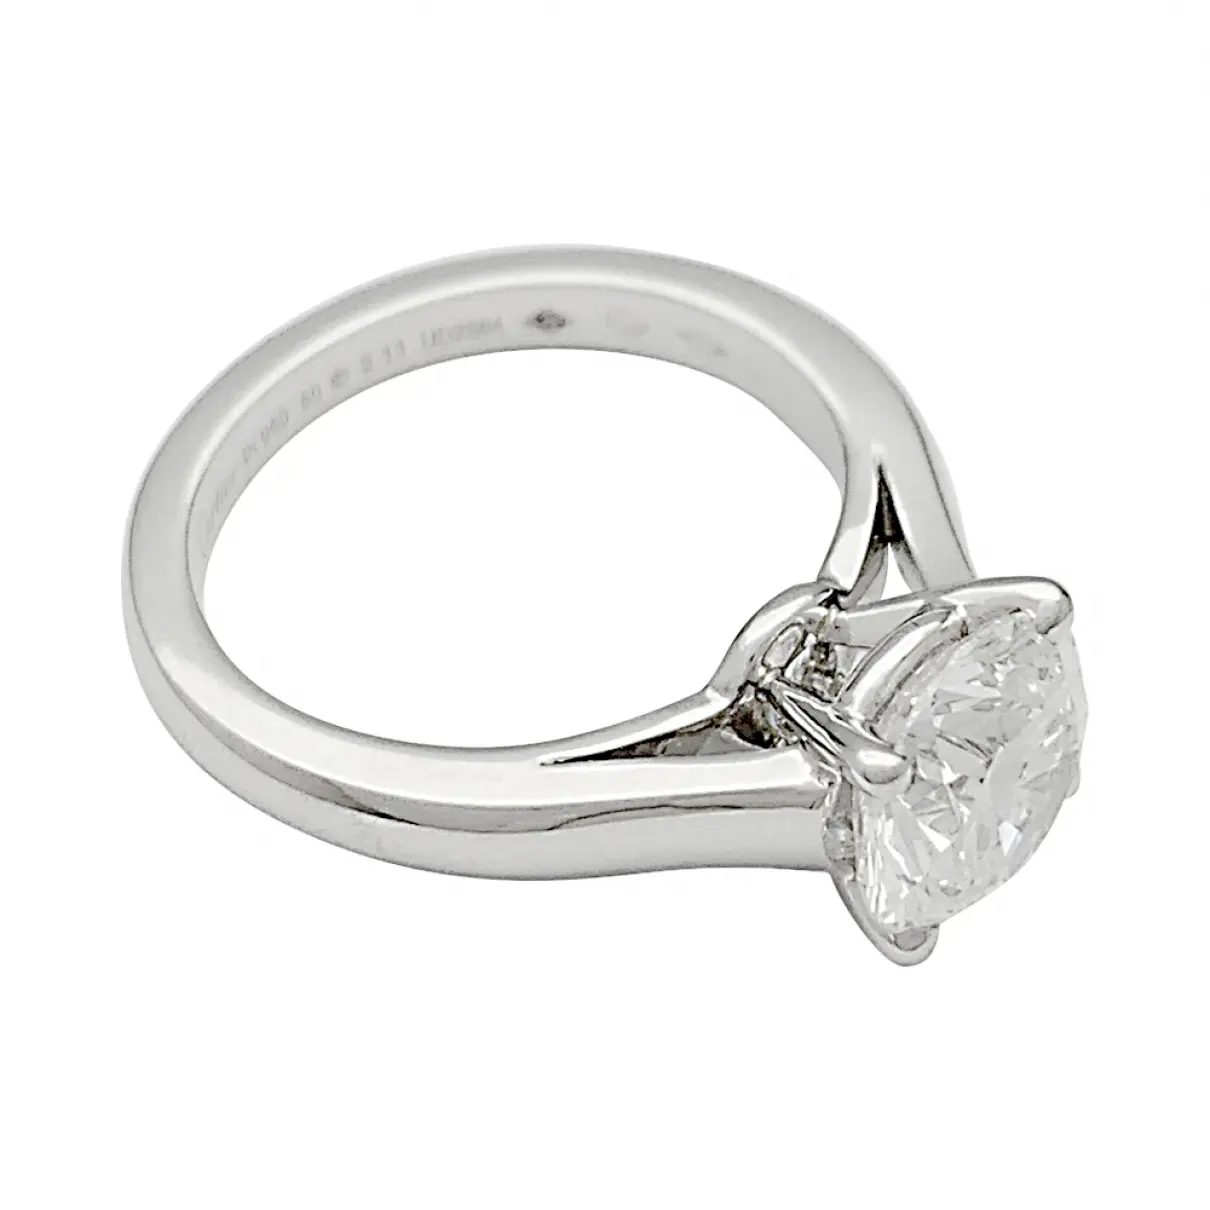 1895 platinum ring Cartier